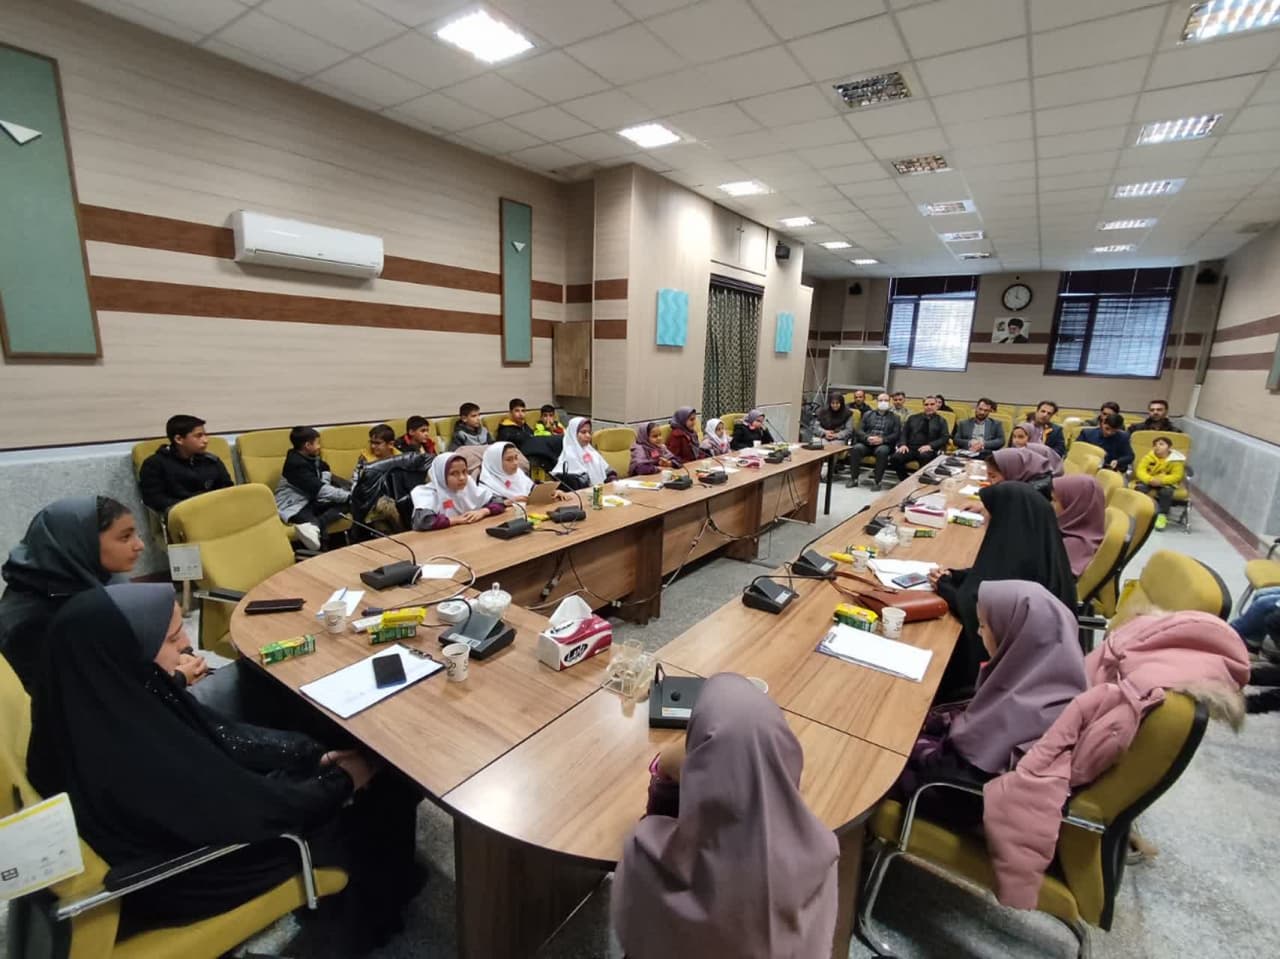 اولین جلسه "پارلمان کودک" شهر شهباز در صحن علنی شورای اسلامی برگزار شد